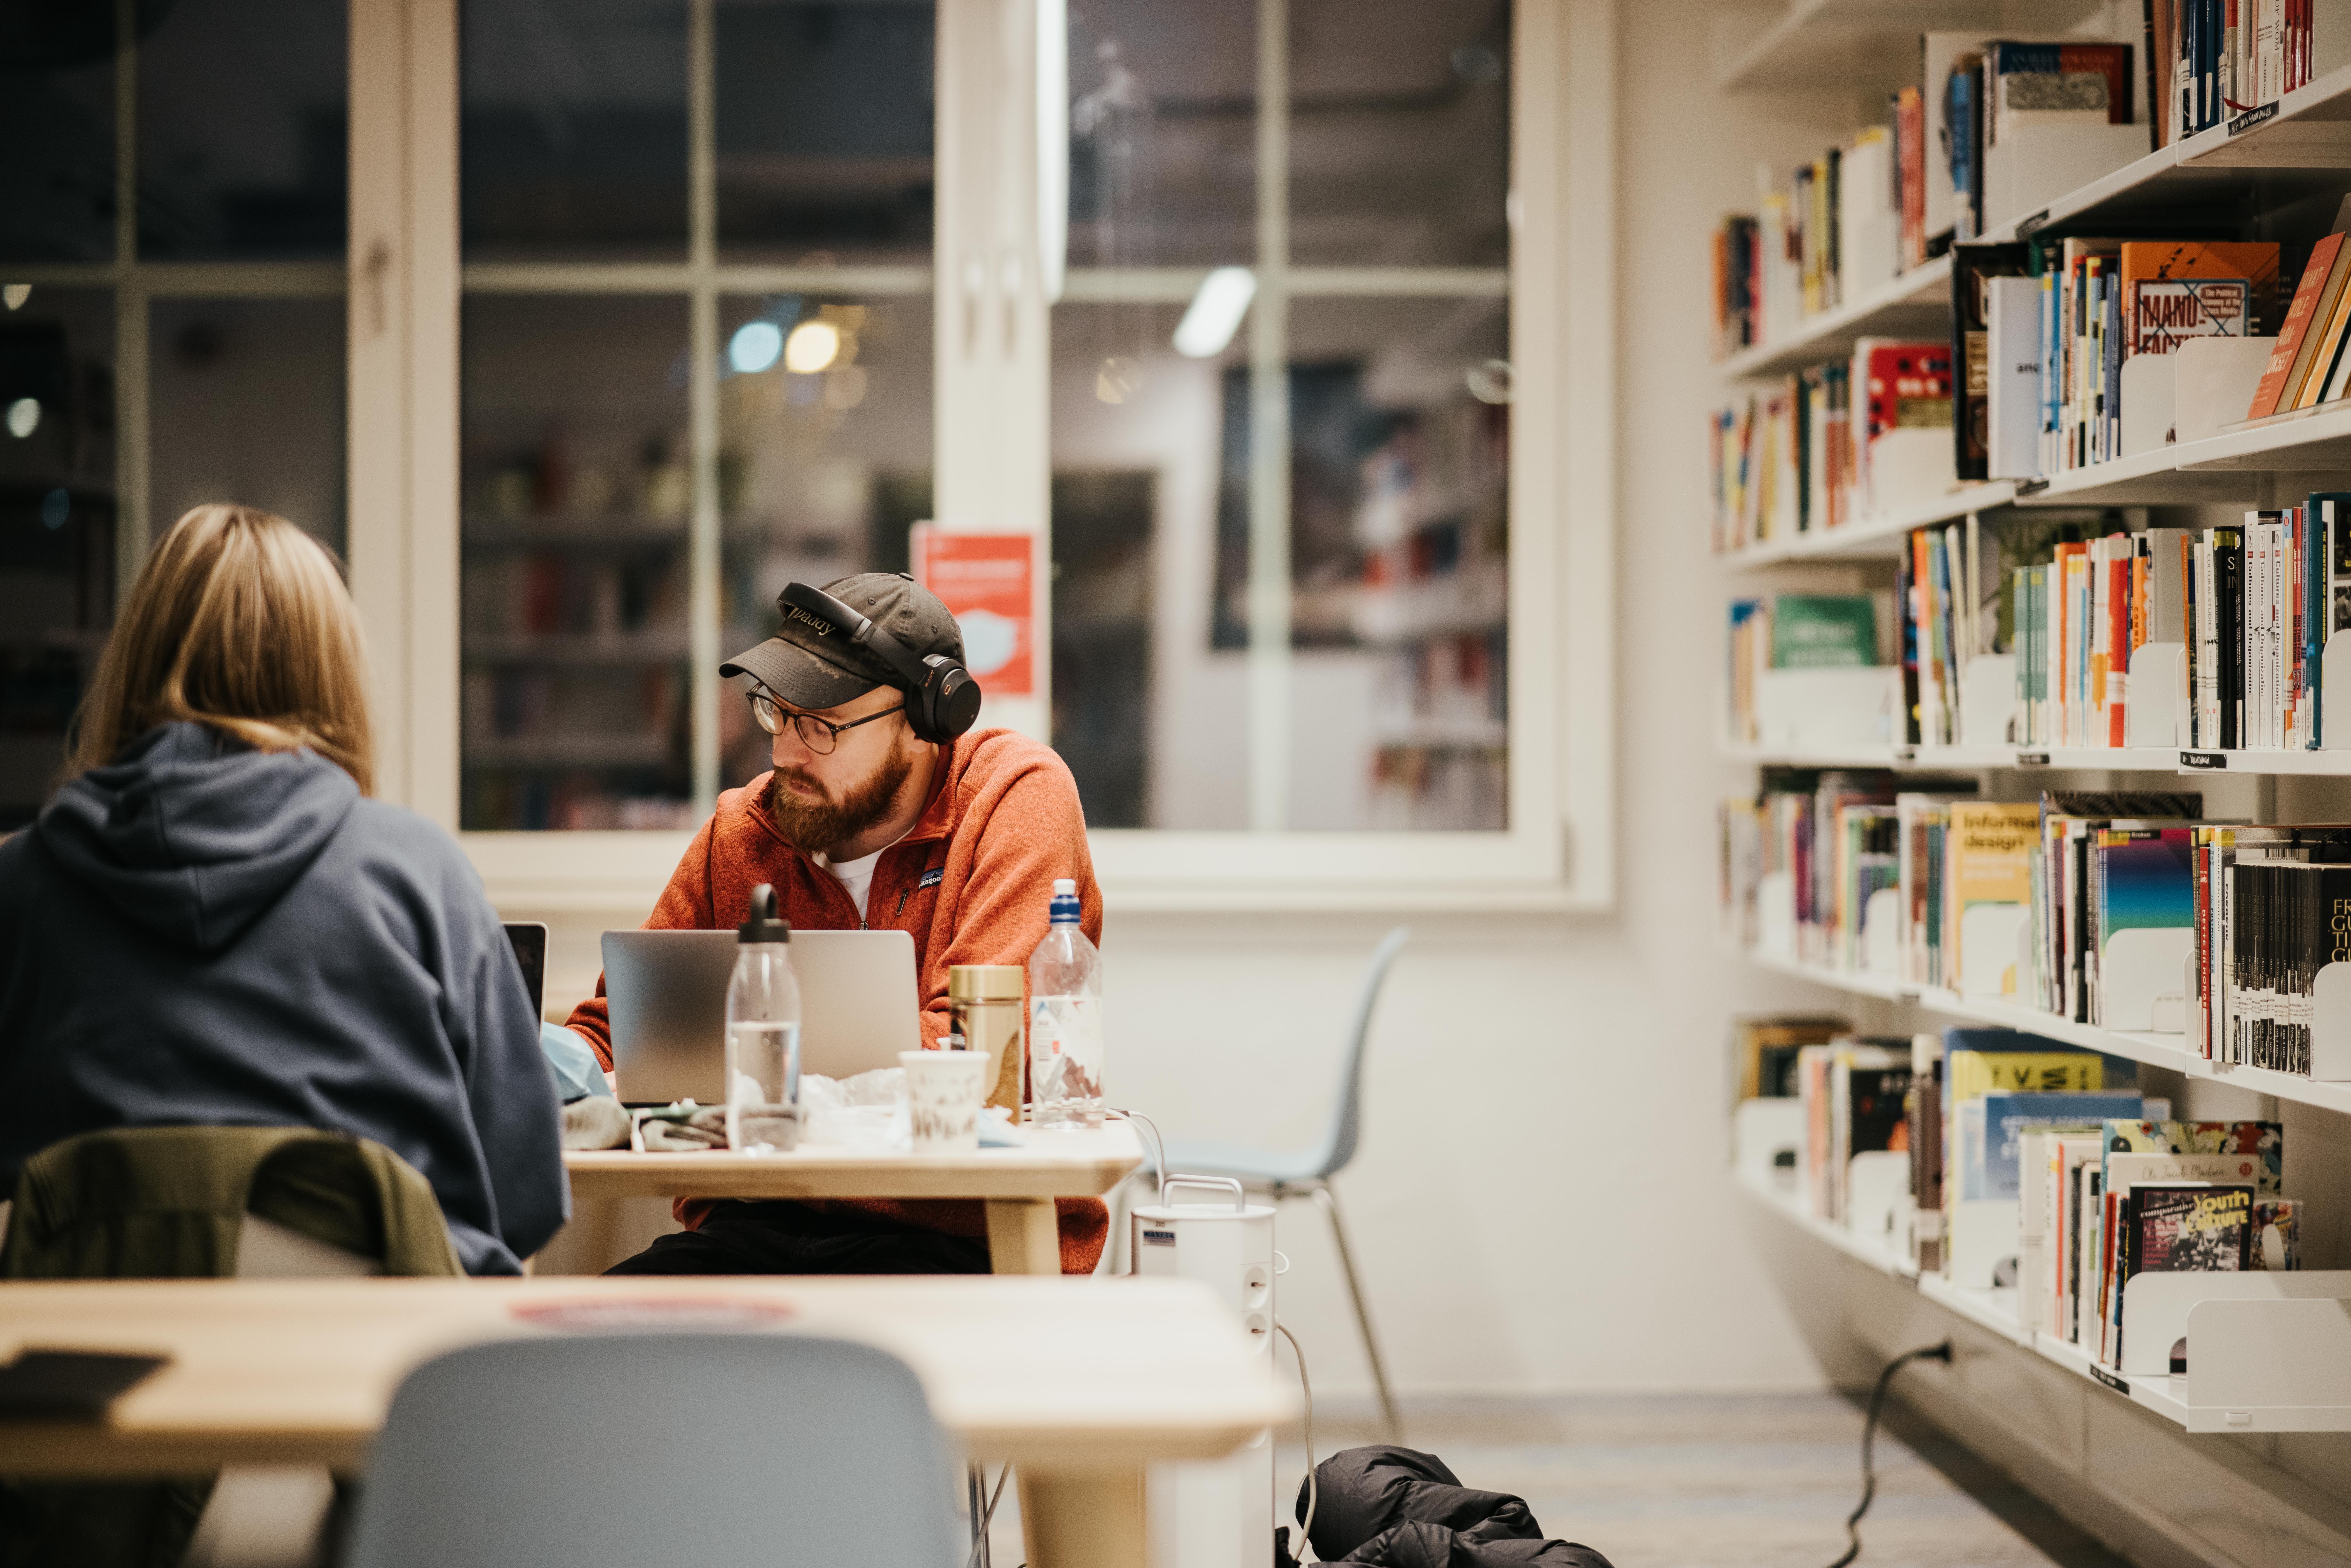 En gutt og en jente sitter på biblioteket på Fjerdingen. Gutten har rød hettegenser og ser konsentrert ut